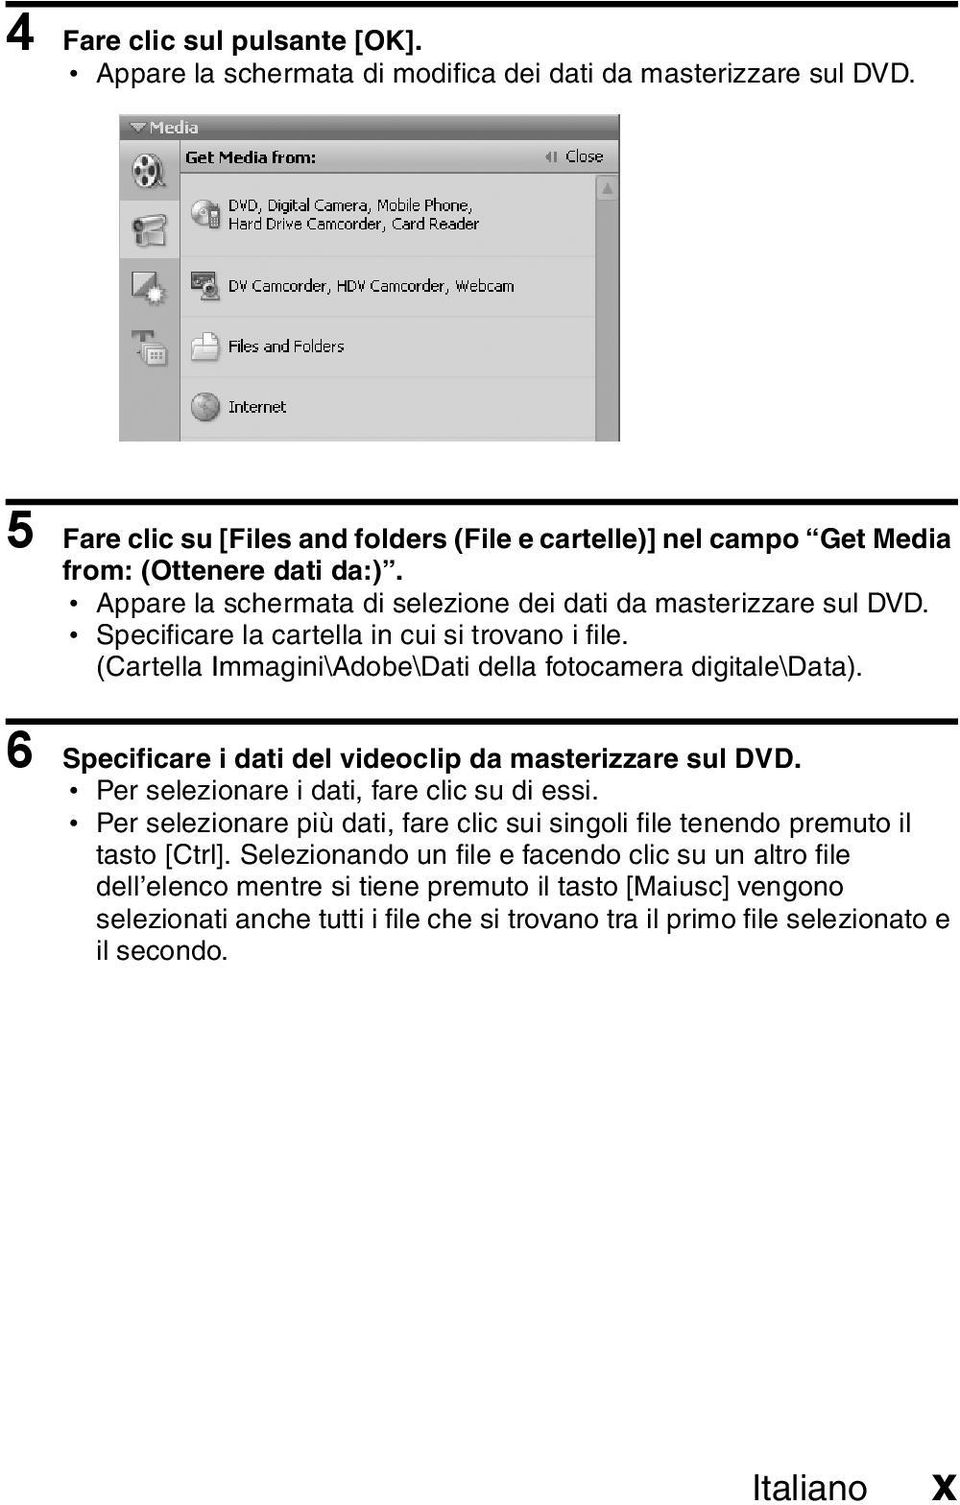 6 Specificare i dati del videoclip da masterizzare sul DVD. h Per selezionare i dati, fare clic su di essi. h Per selezionare più dati, fare clic sui singoli file tenendo premuto il tasto [Ctrl].